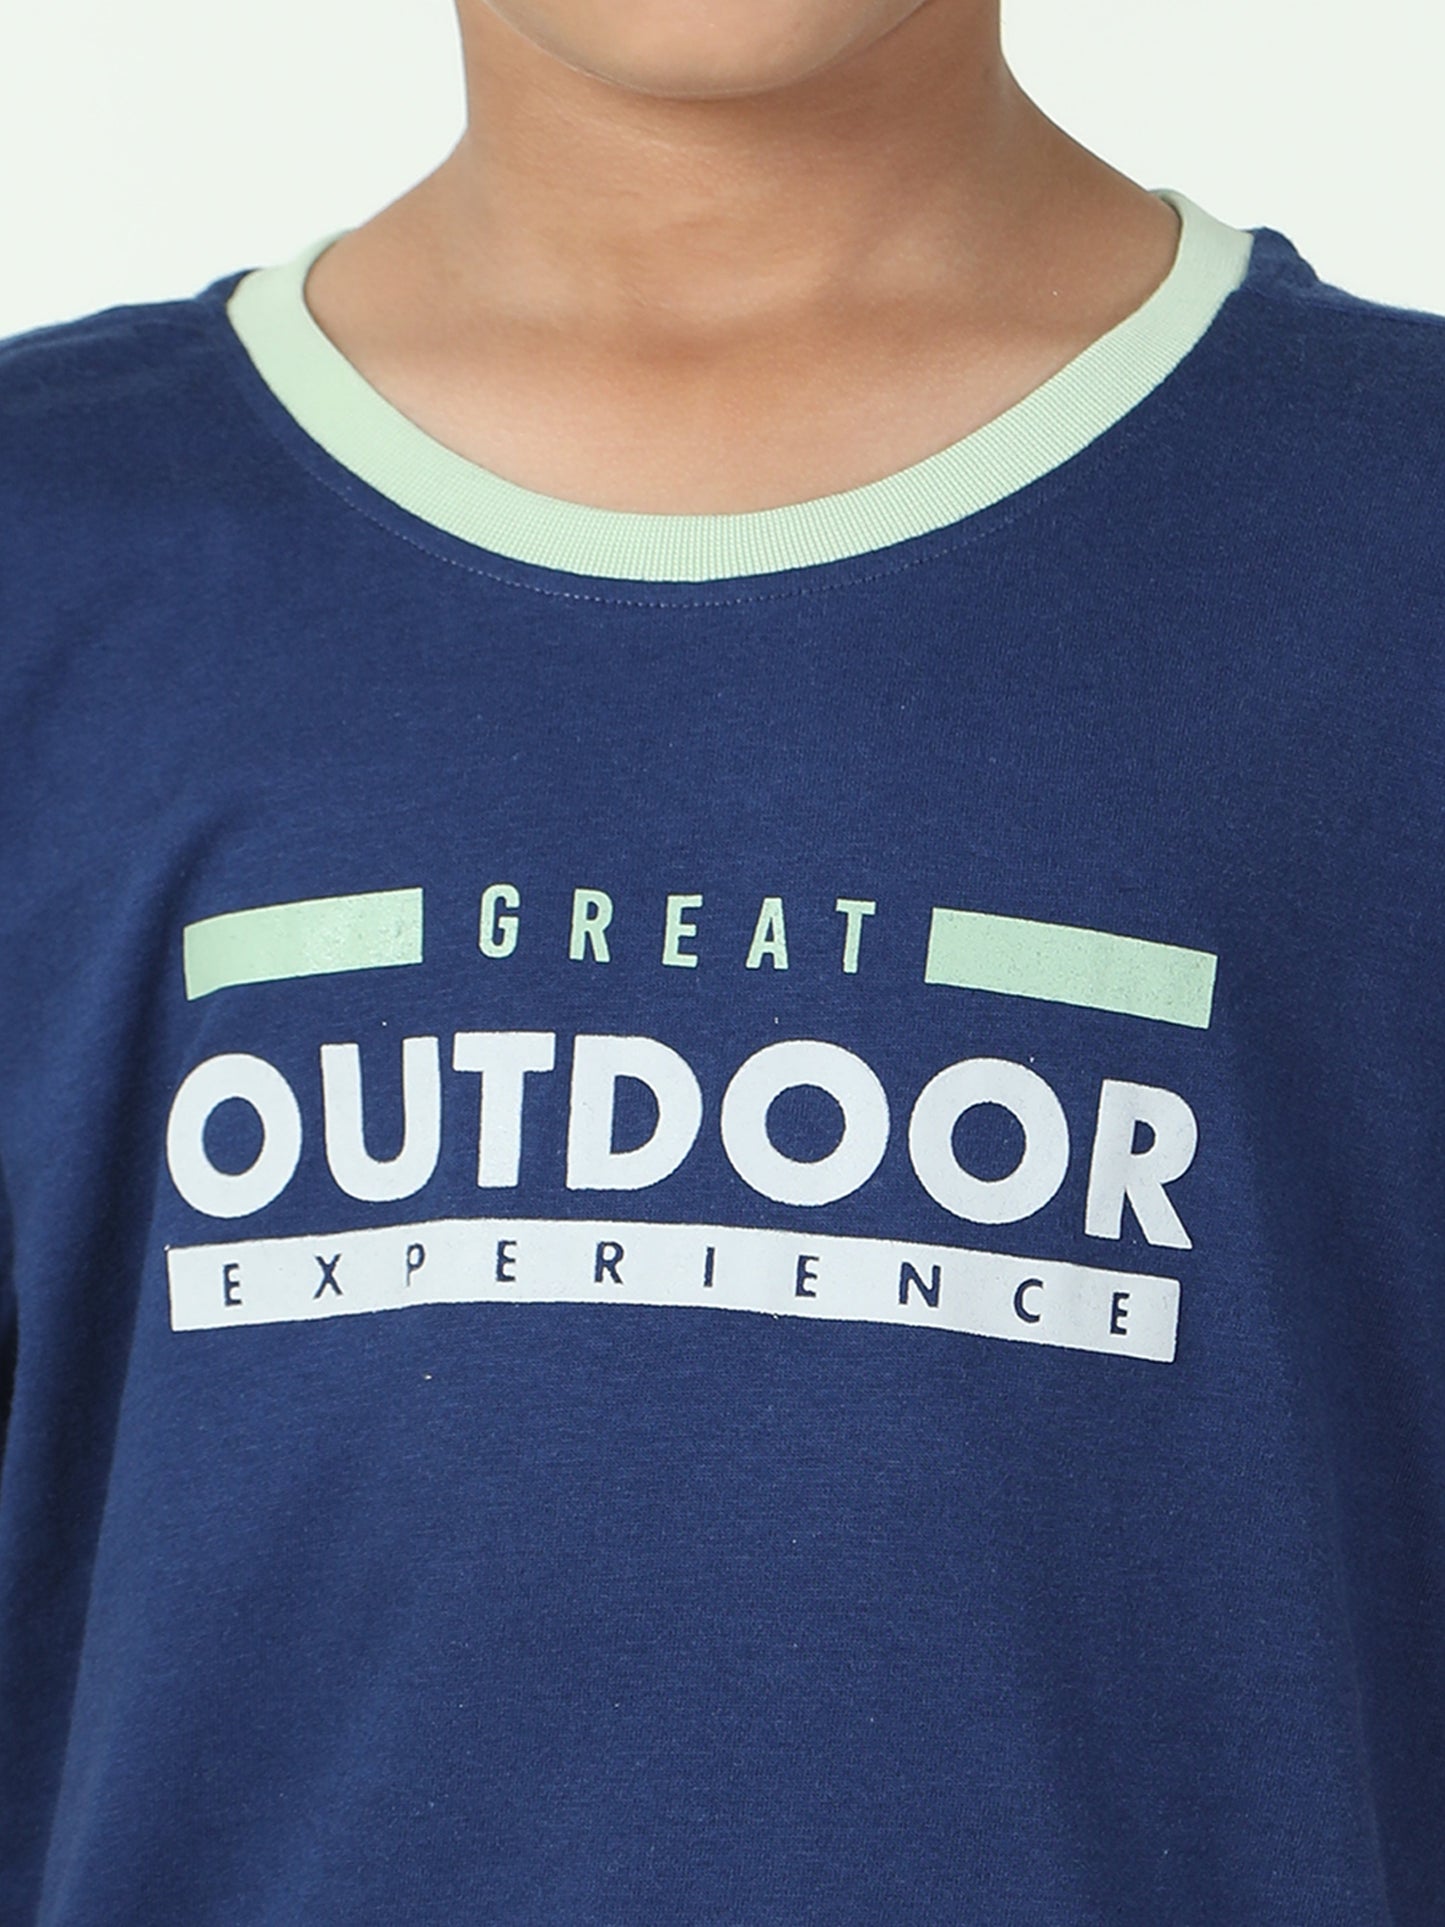 Boys Outdoor T-Shirt